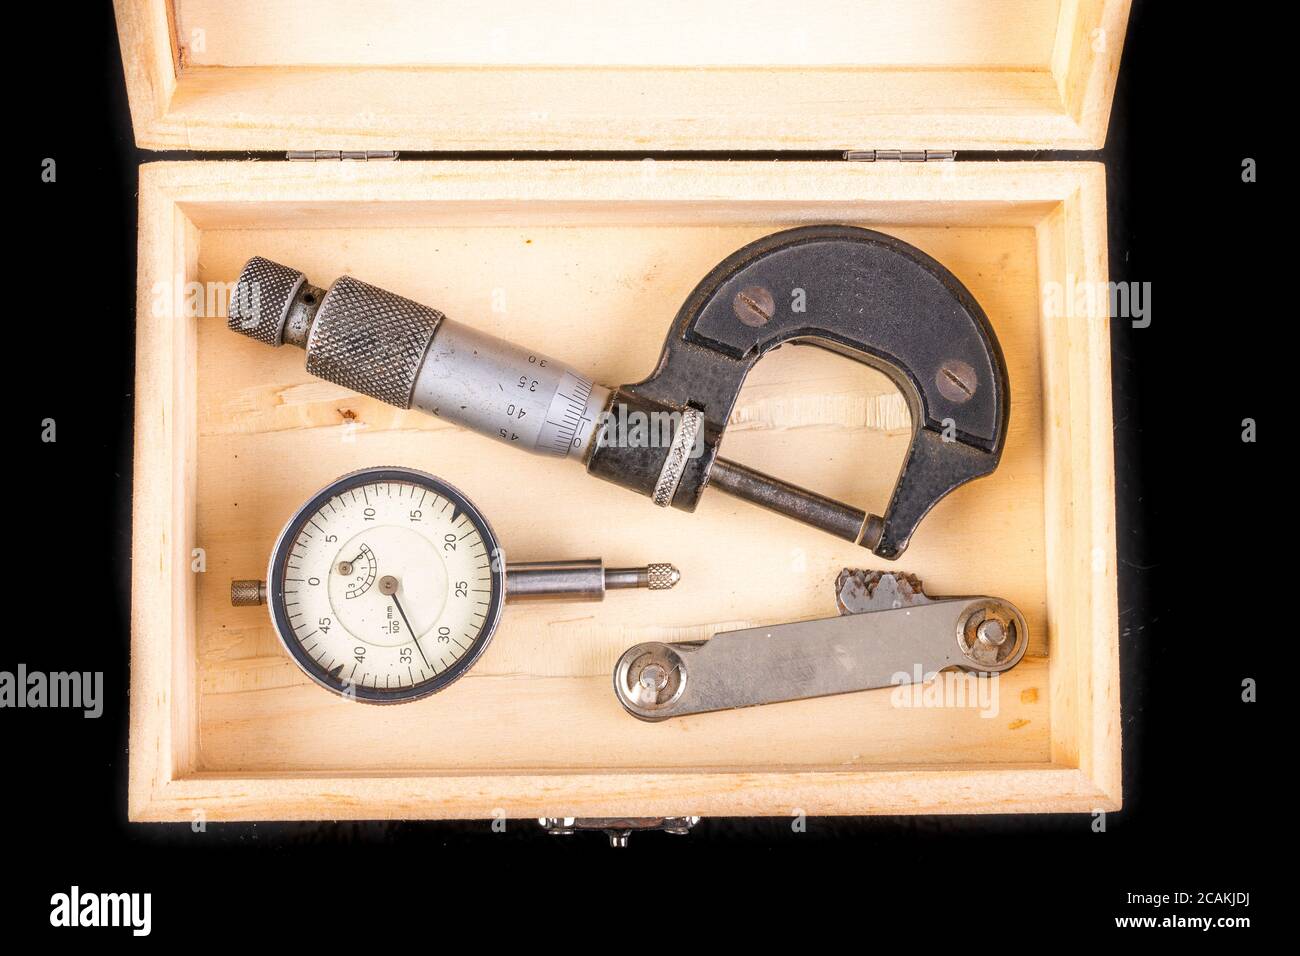 Herramientas de medición en una caja de madera. Accesorios para marcadores  y controladores de calidad. Fondo oscuro Fotografía de stock - Alamy